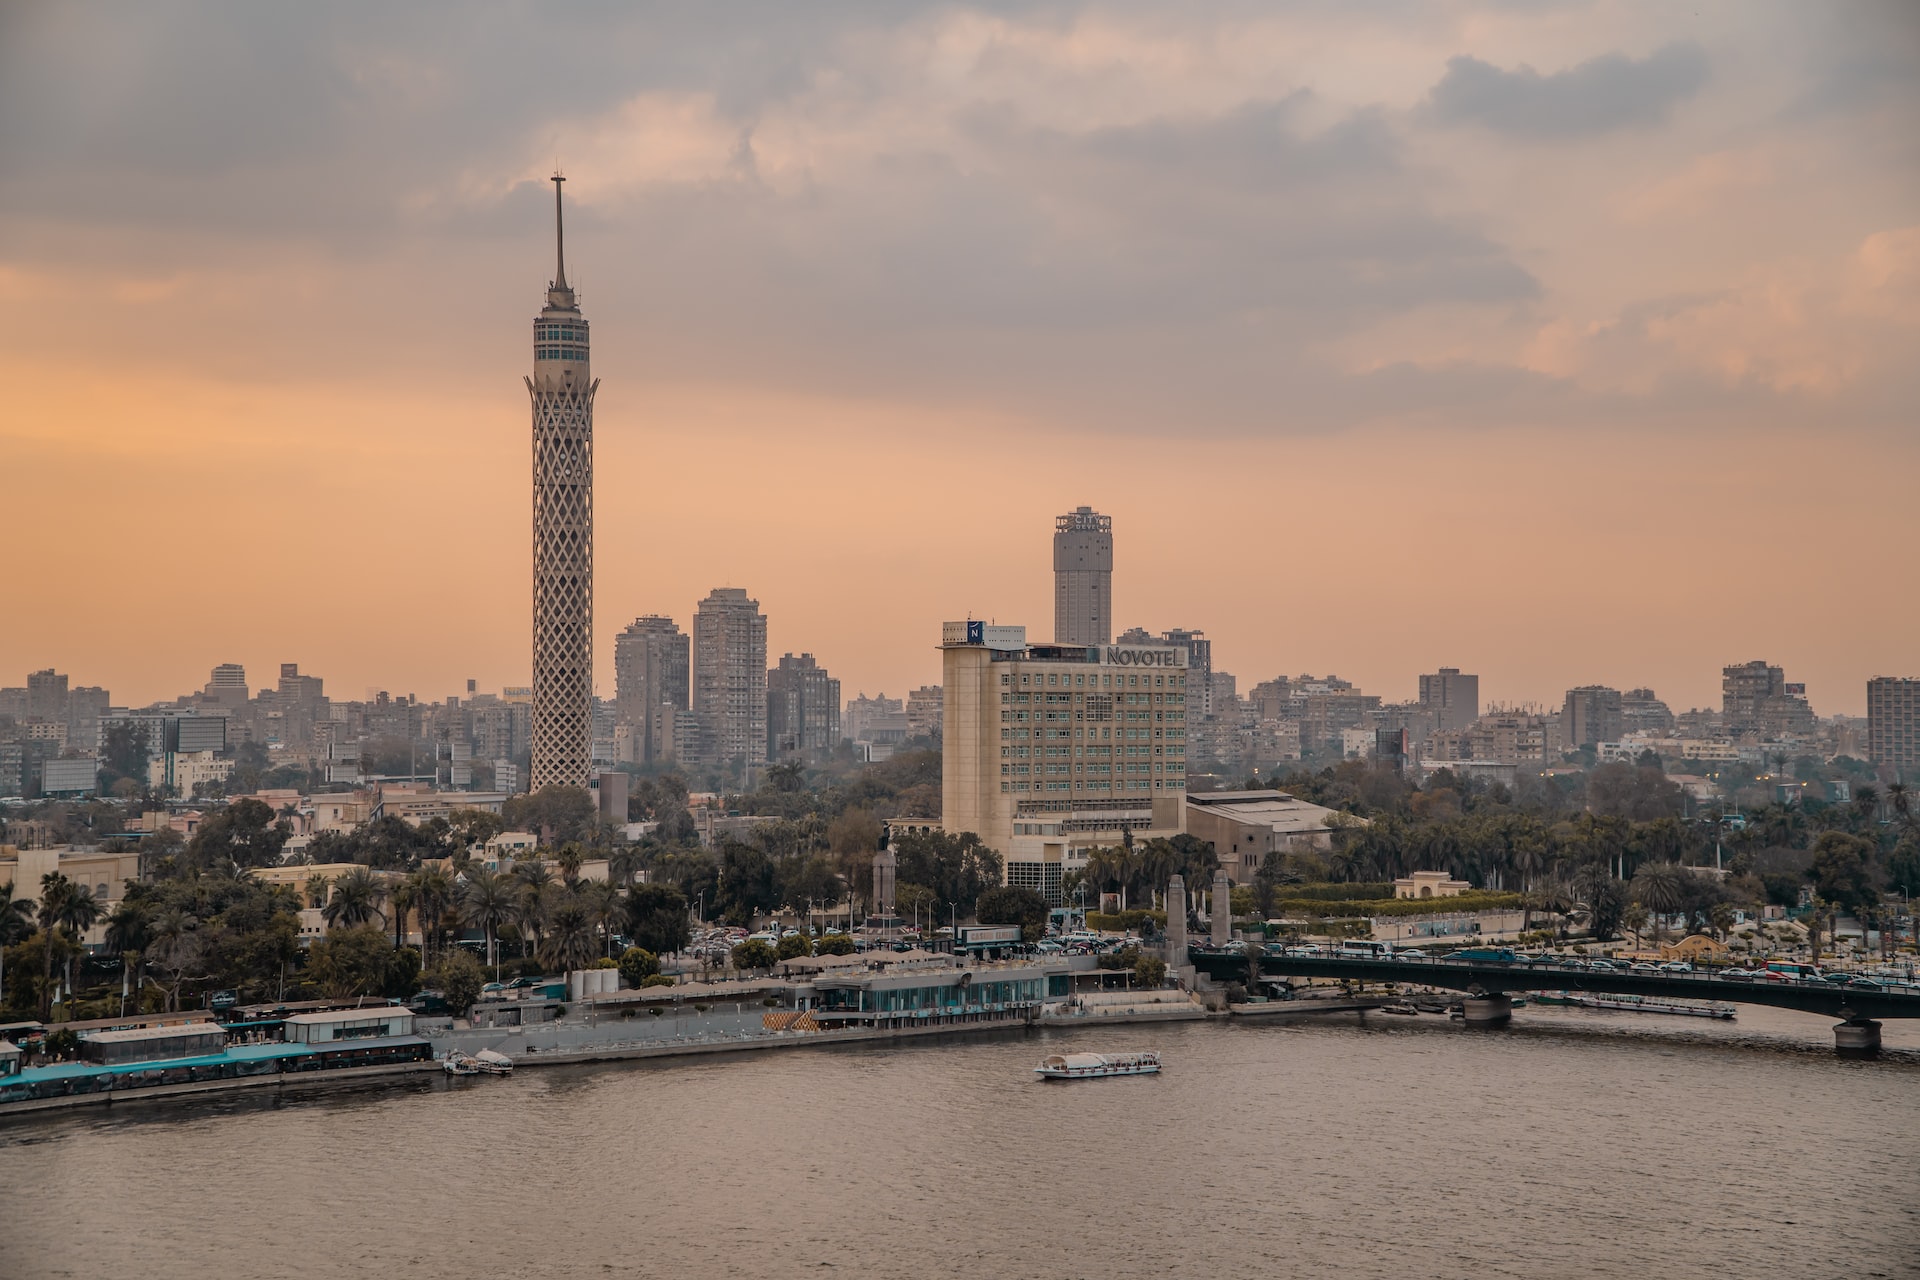 Day 12: Cairo